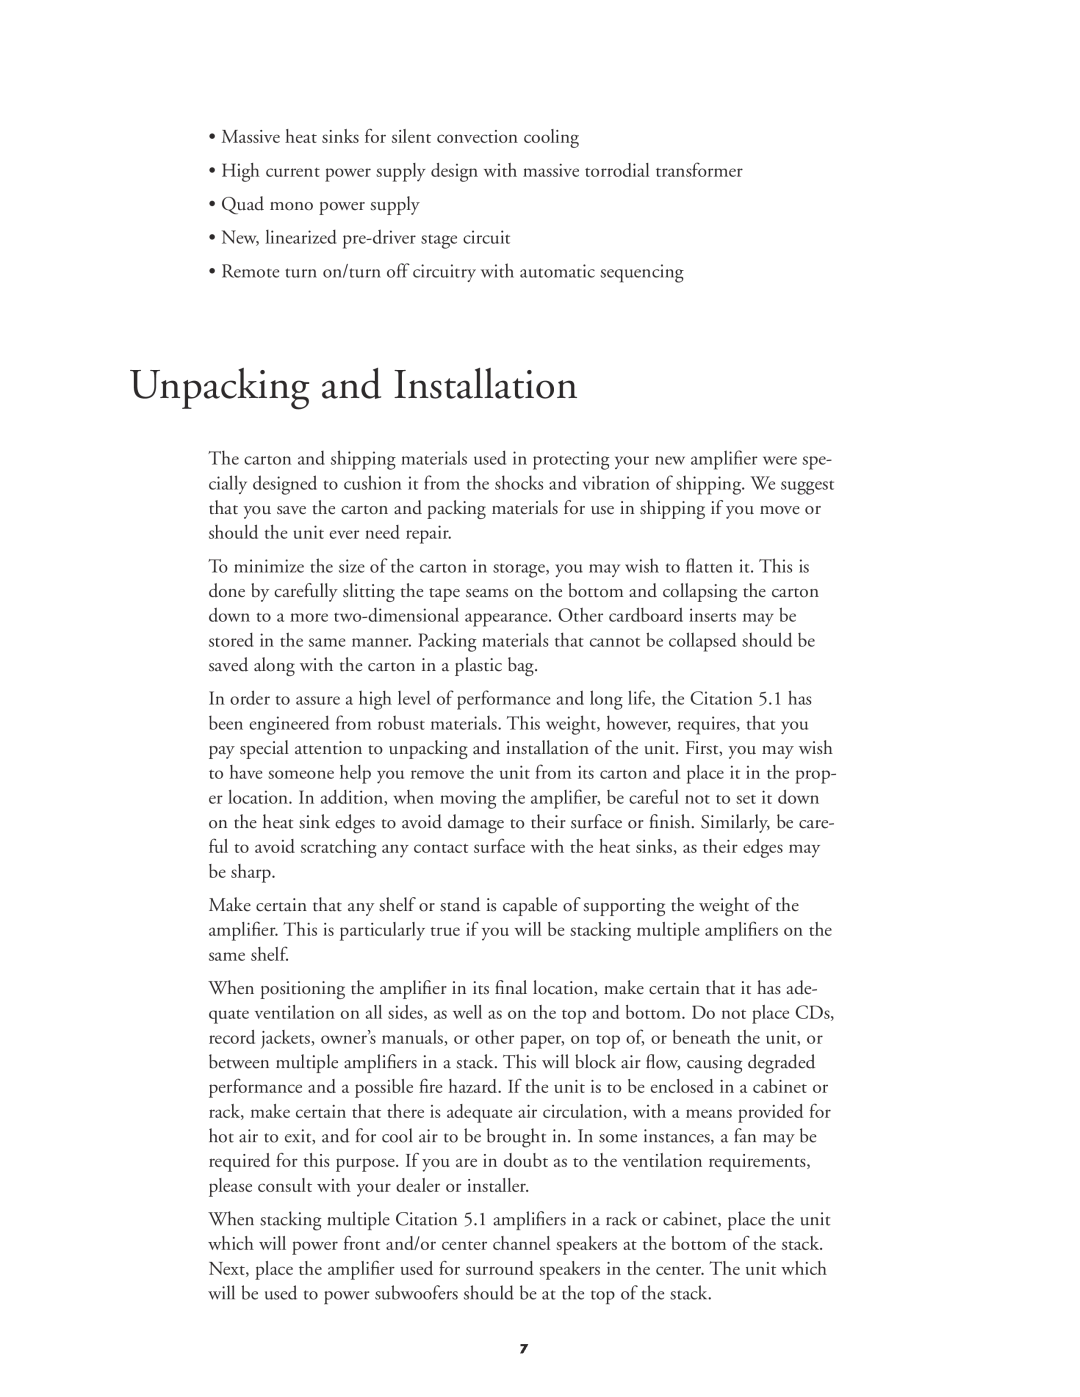 Harman-Kardon 5.1 manual Unpacking and Installation 